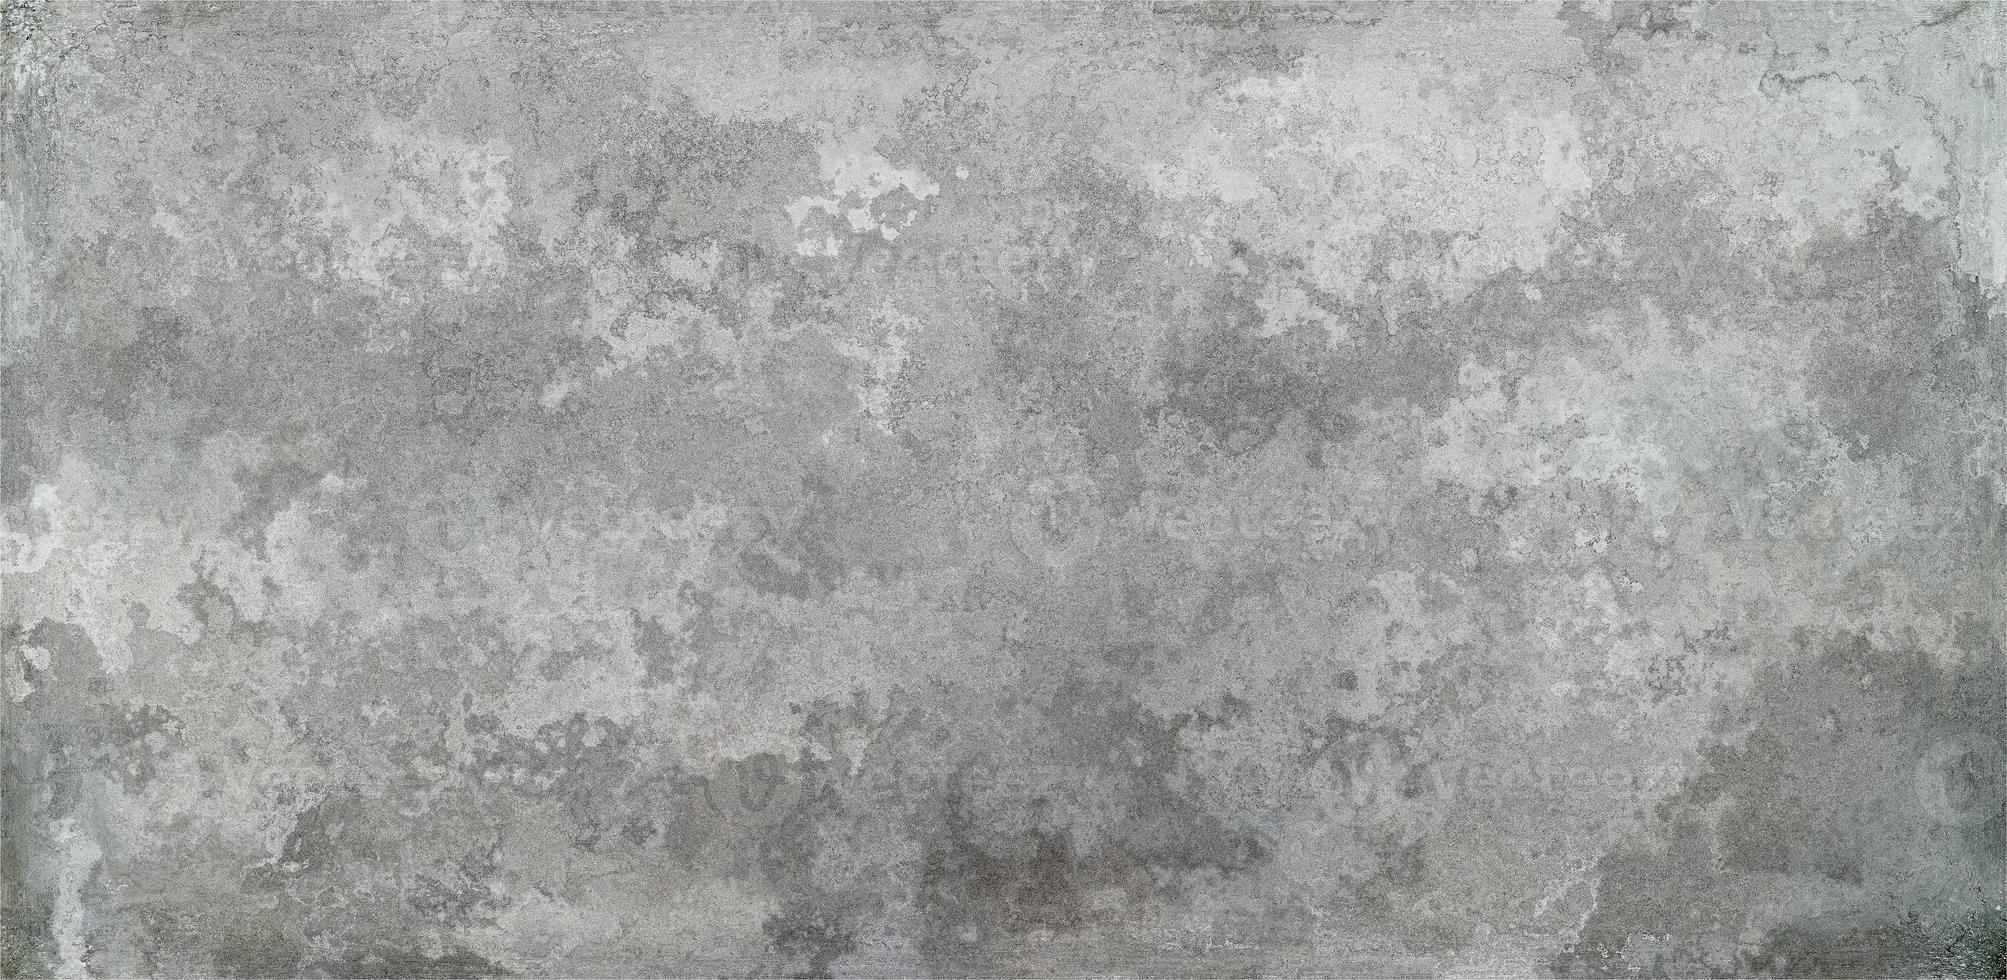 grå betong bakgrund. vit smutsig gammal cementstruktur. grunge av gammal betong foto